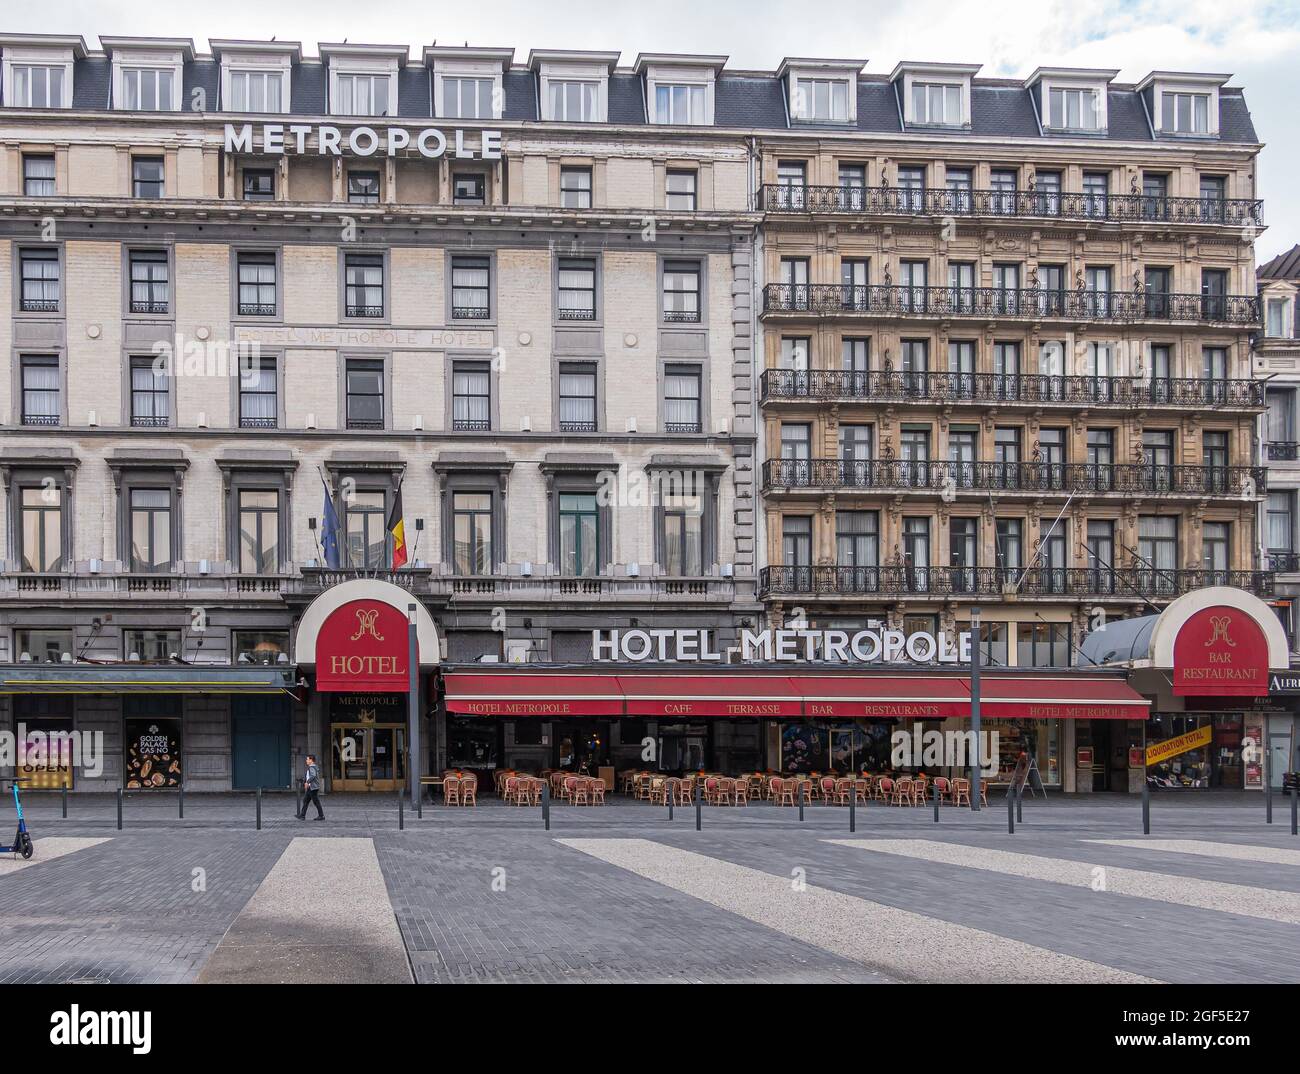 Bruxelles, Belgique - 31 juillet 2021 : façade avant de l'hôtel Metropole sur la place de Brouckère. Ceinture à ébarbage rouge avec lettres et drapeaux dorés. Chaises et ta Banque D'Images